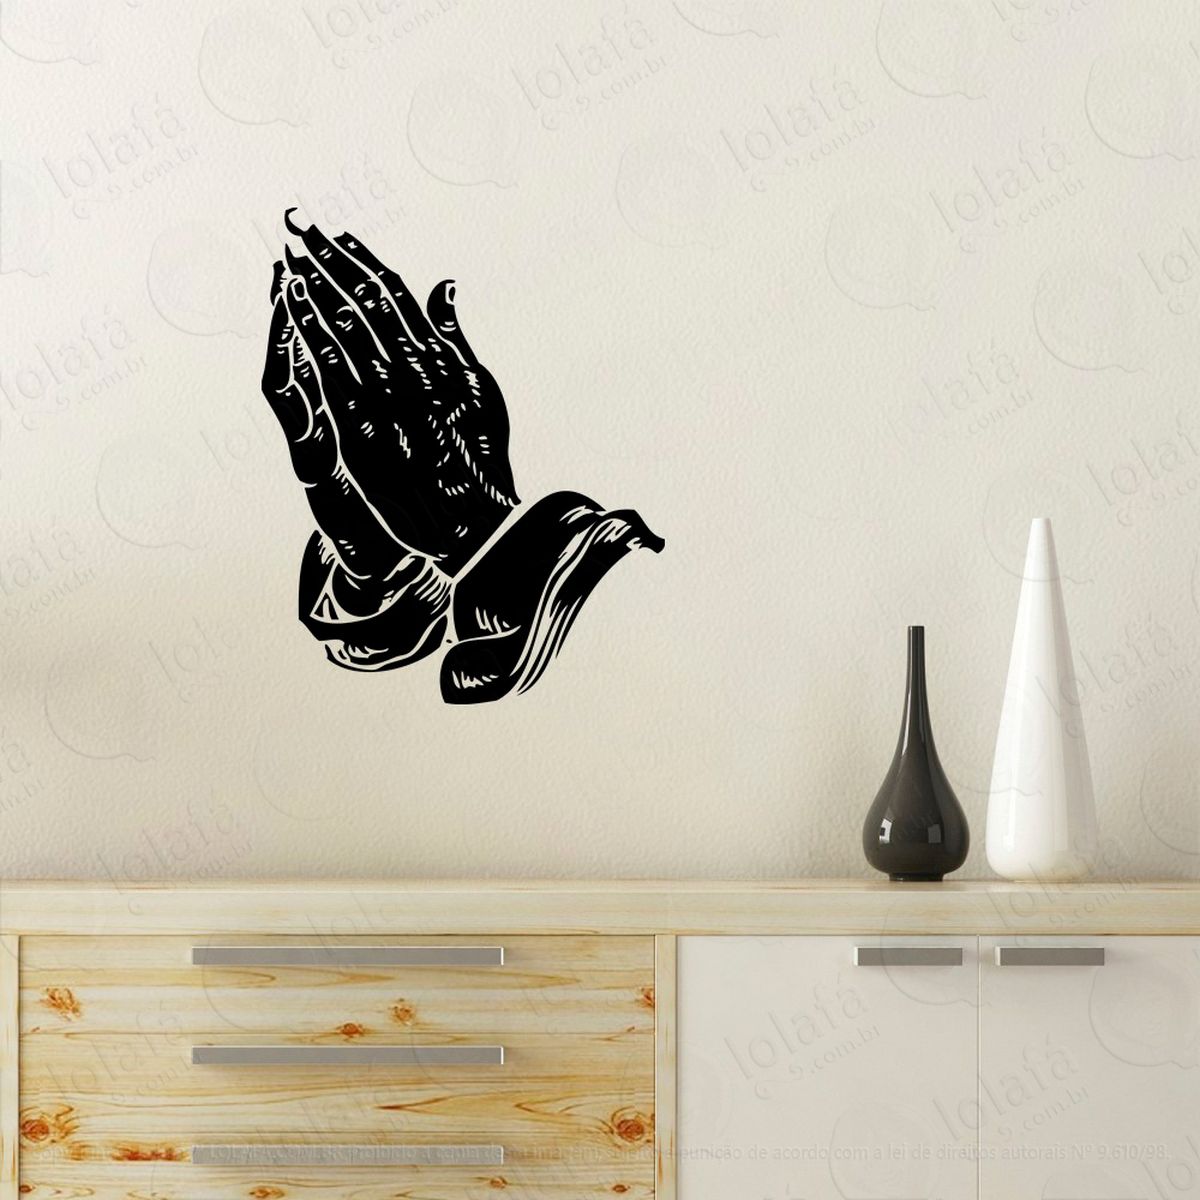 mãos rezando adesivo de parede decorativo para casa, quarto, sala e vidro - mod:71